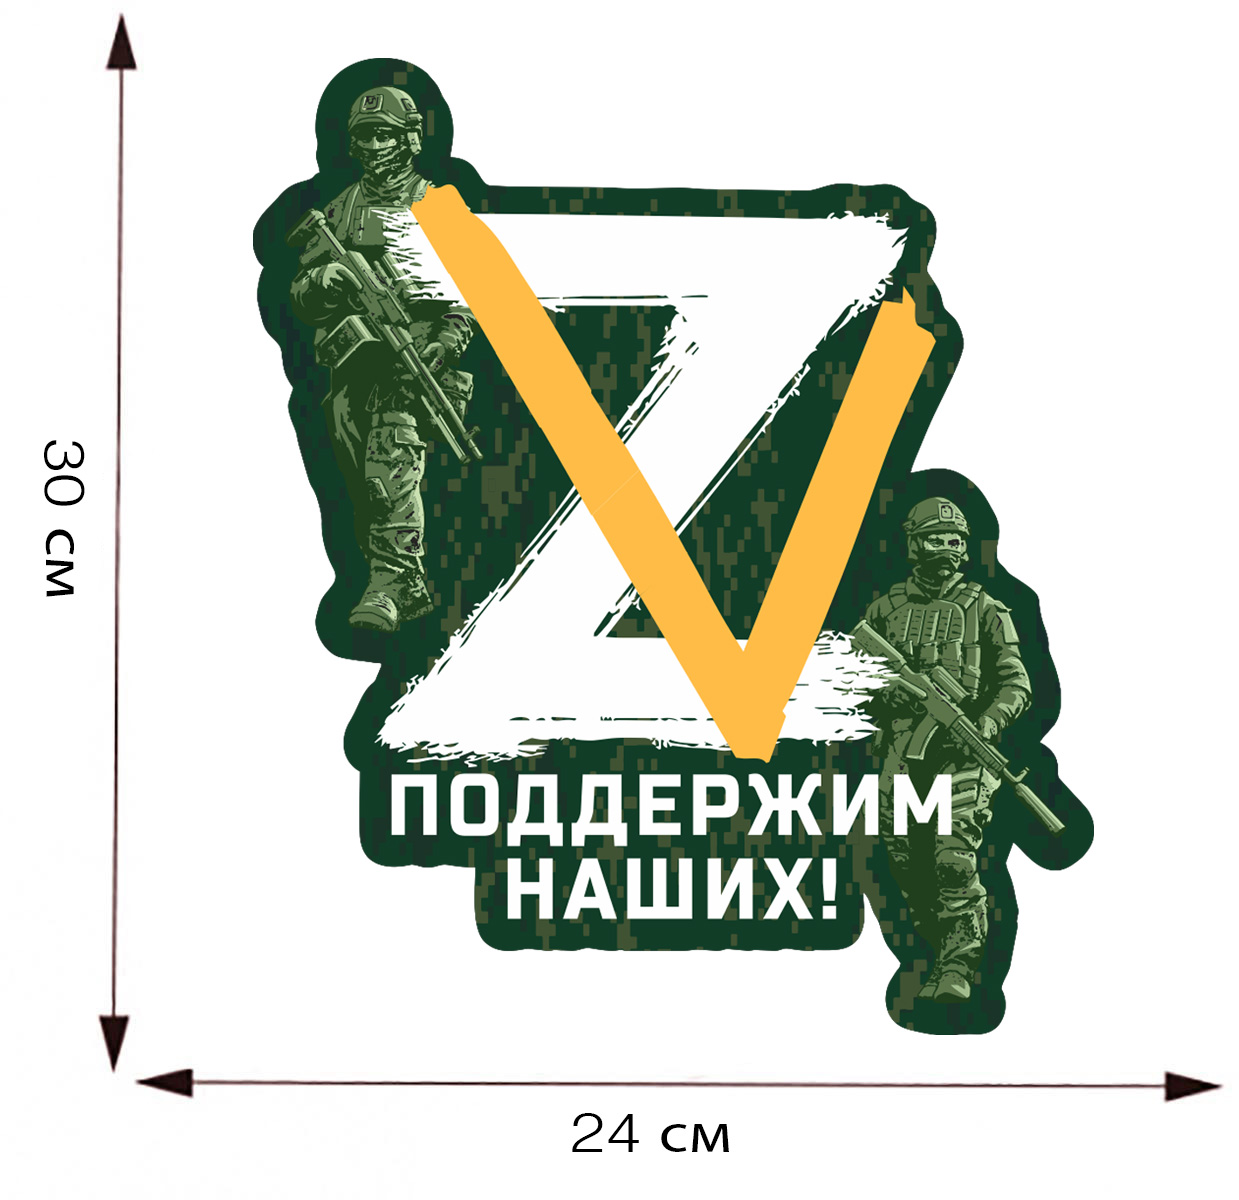 Автомобильная виниловая наклейка "Спецоперация Z-V" - размер